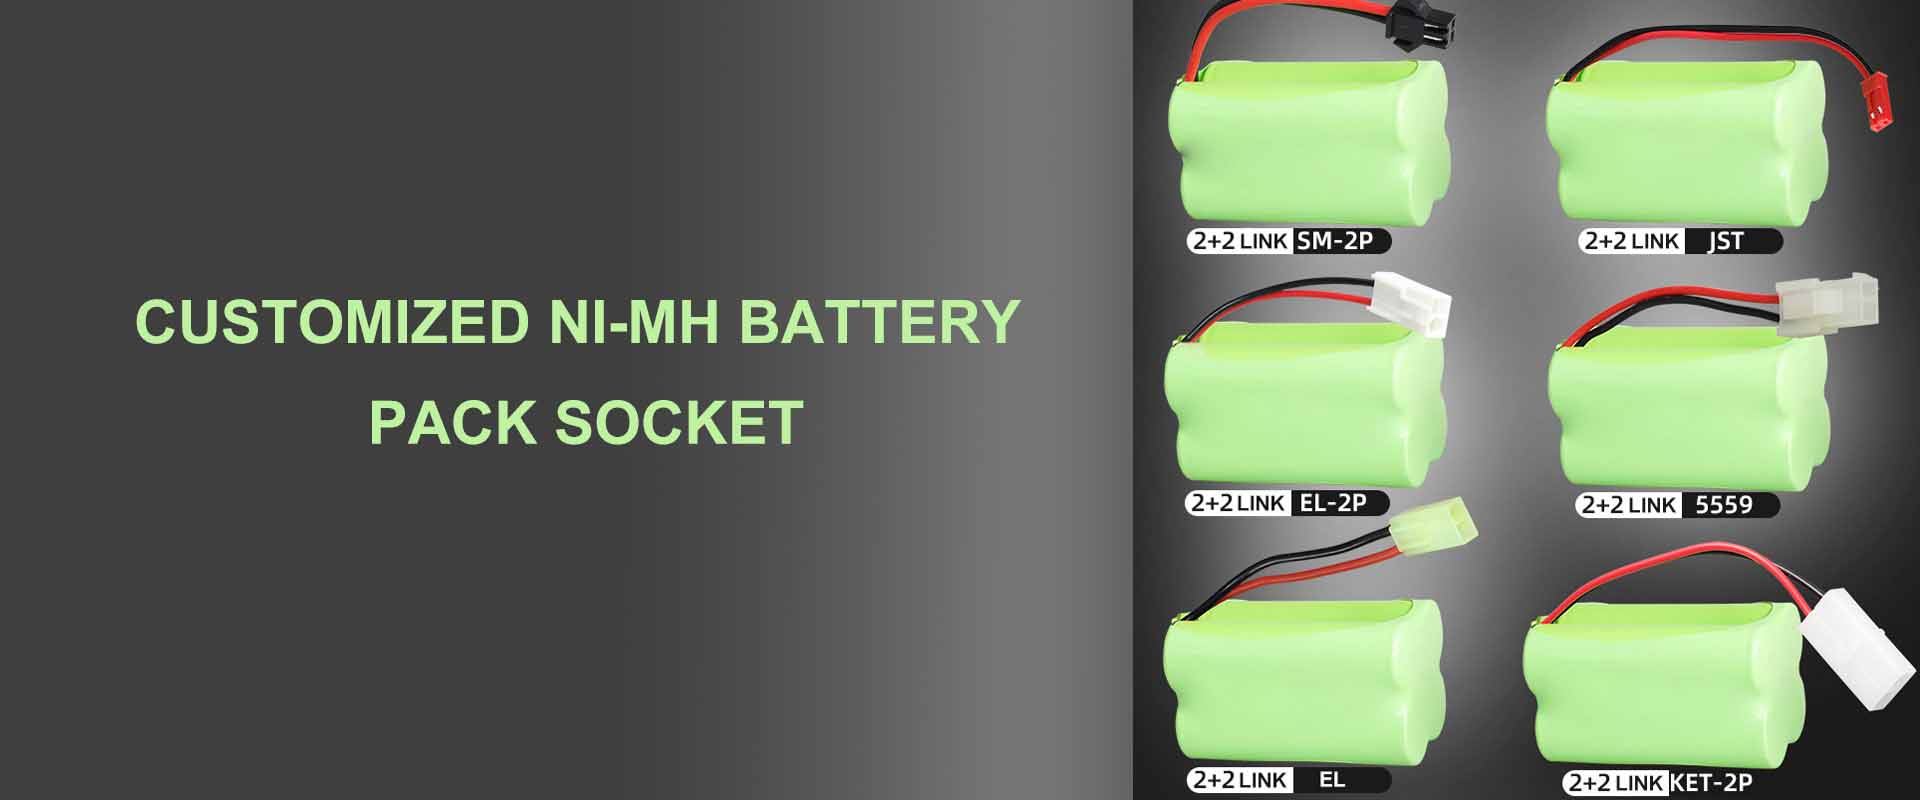 एनआईएमएच बैटरी पैक को कंडीशन और उपयोग कैसे करें |वेइजियांग